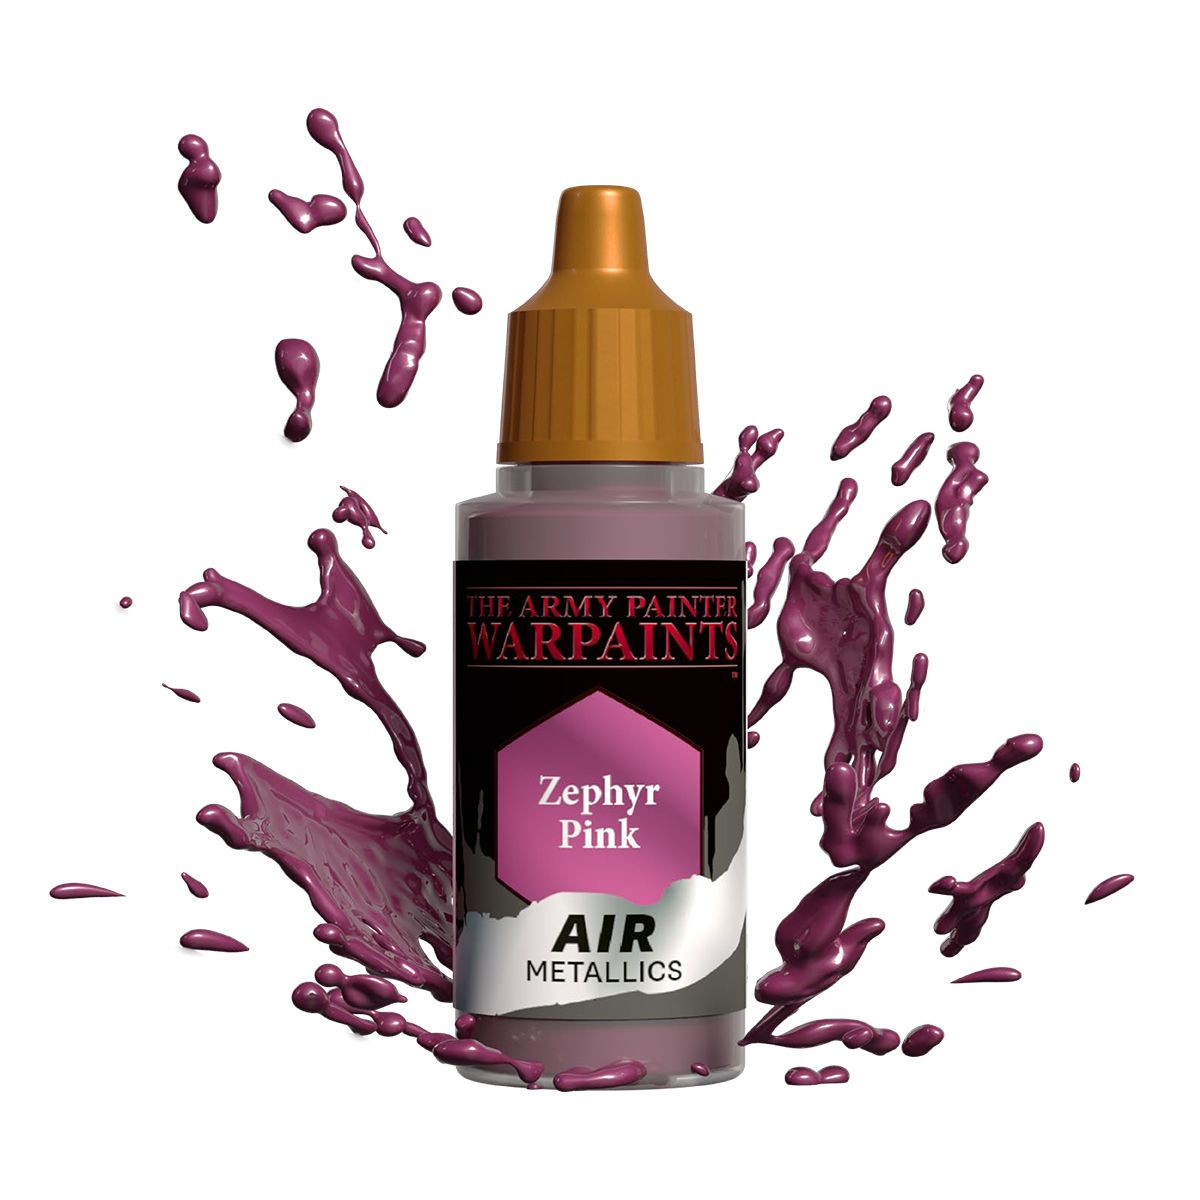 Army Painter Warpaints Air Metallic: Zephyr Pink 18ml